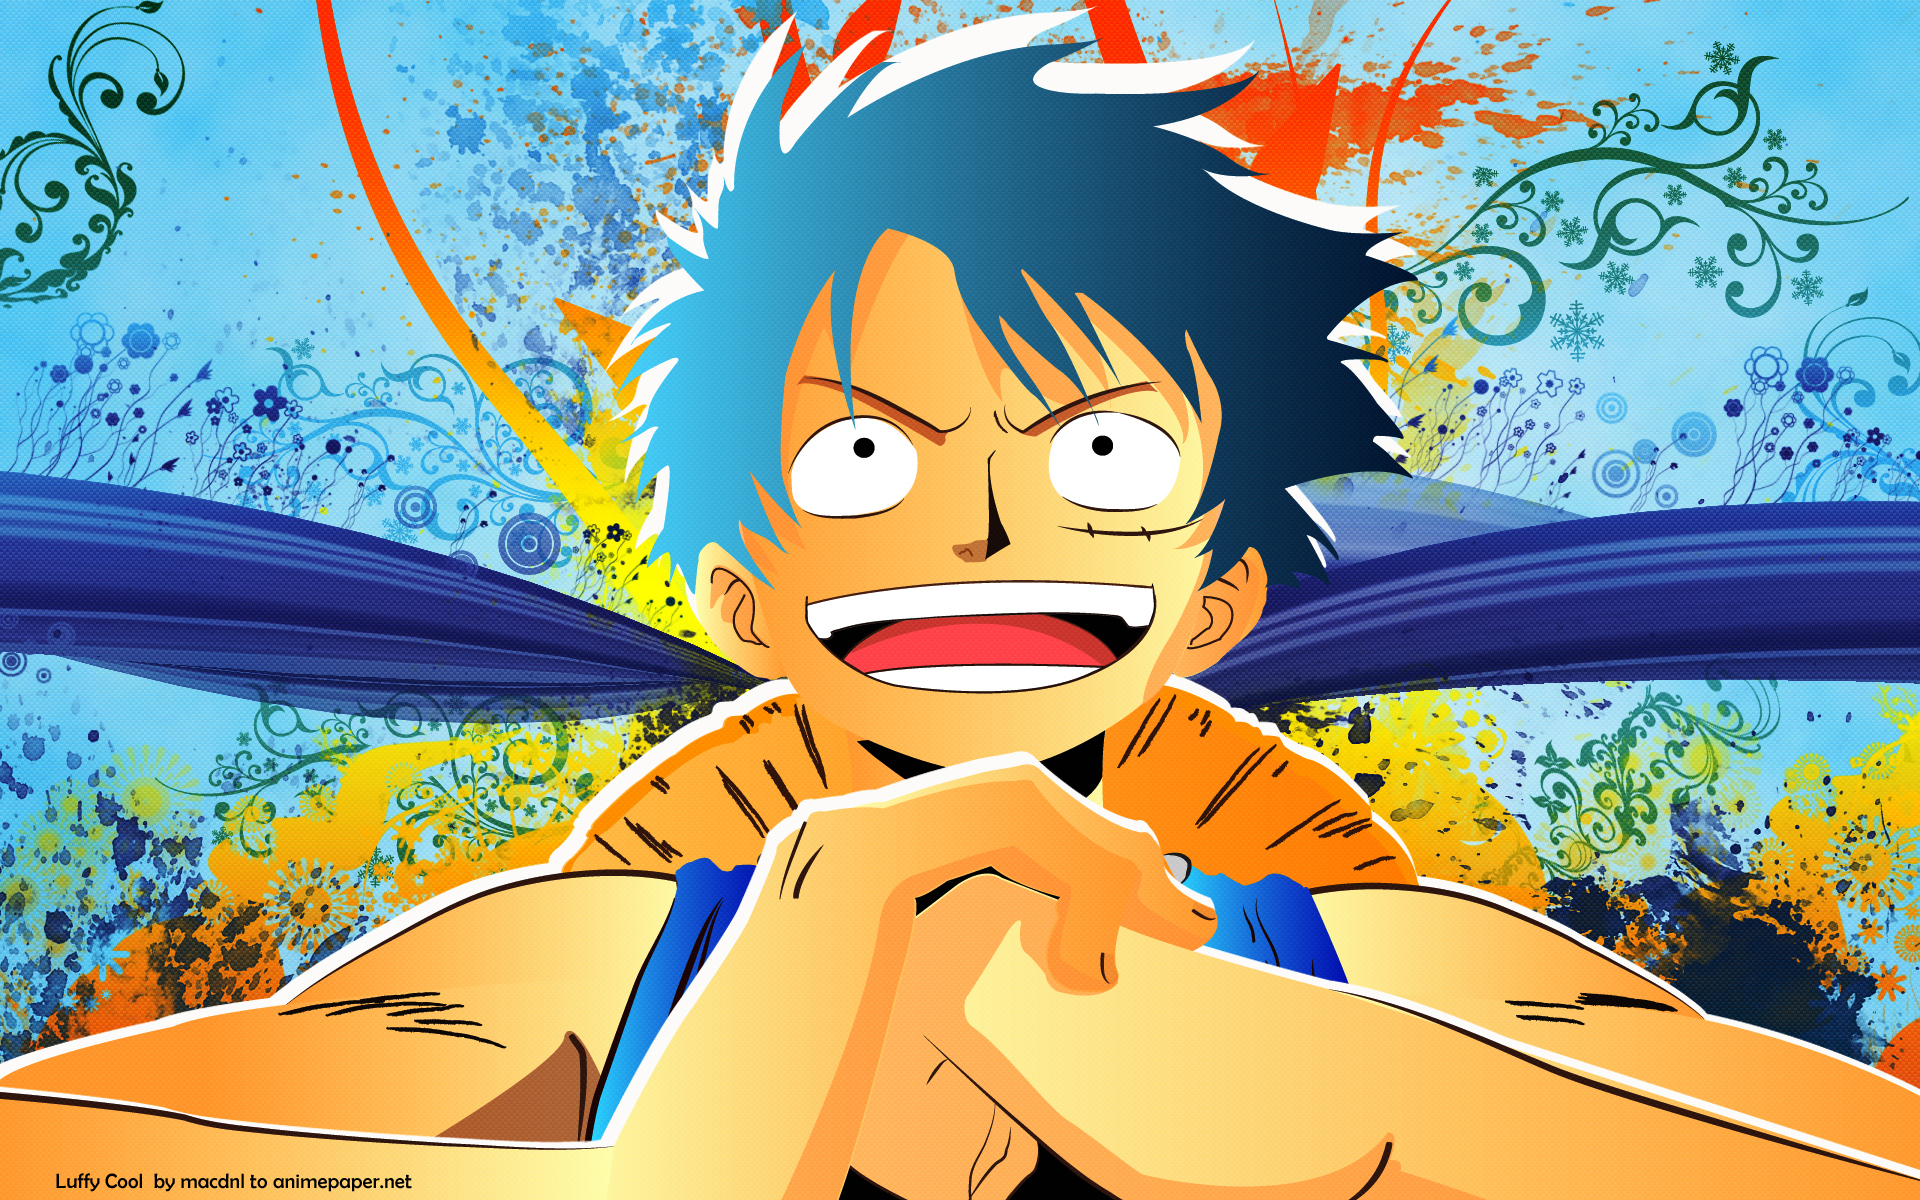 Fan của One Piece ơi! Cùng ngắm những bức hình nền anime HD tuyệt đẹp về siêu phẩm manga này nhé. Chắc chắn sẽ khiến bạn không thể quên!